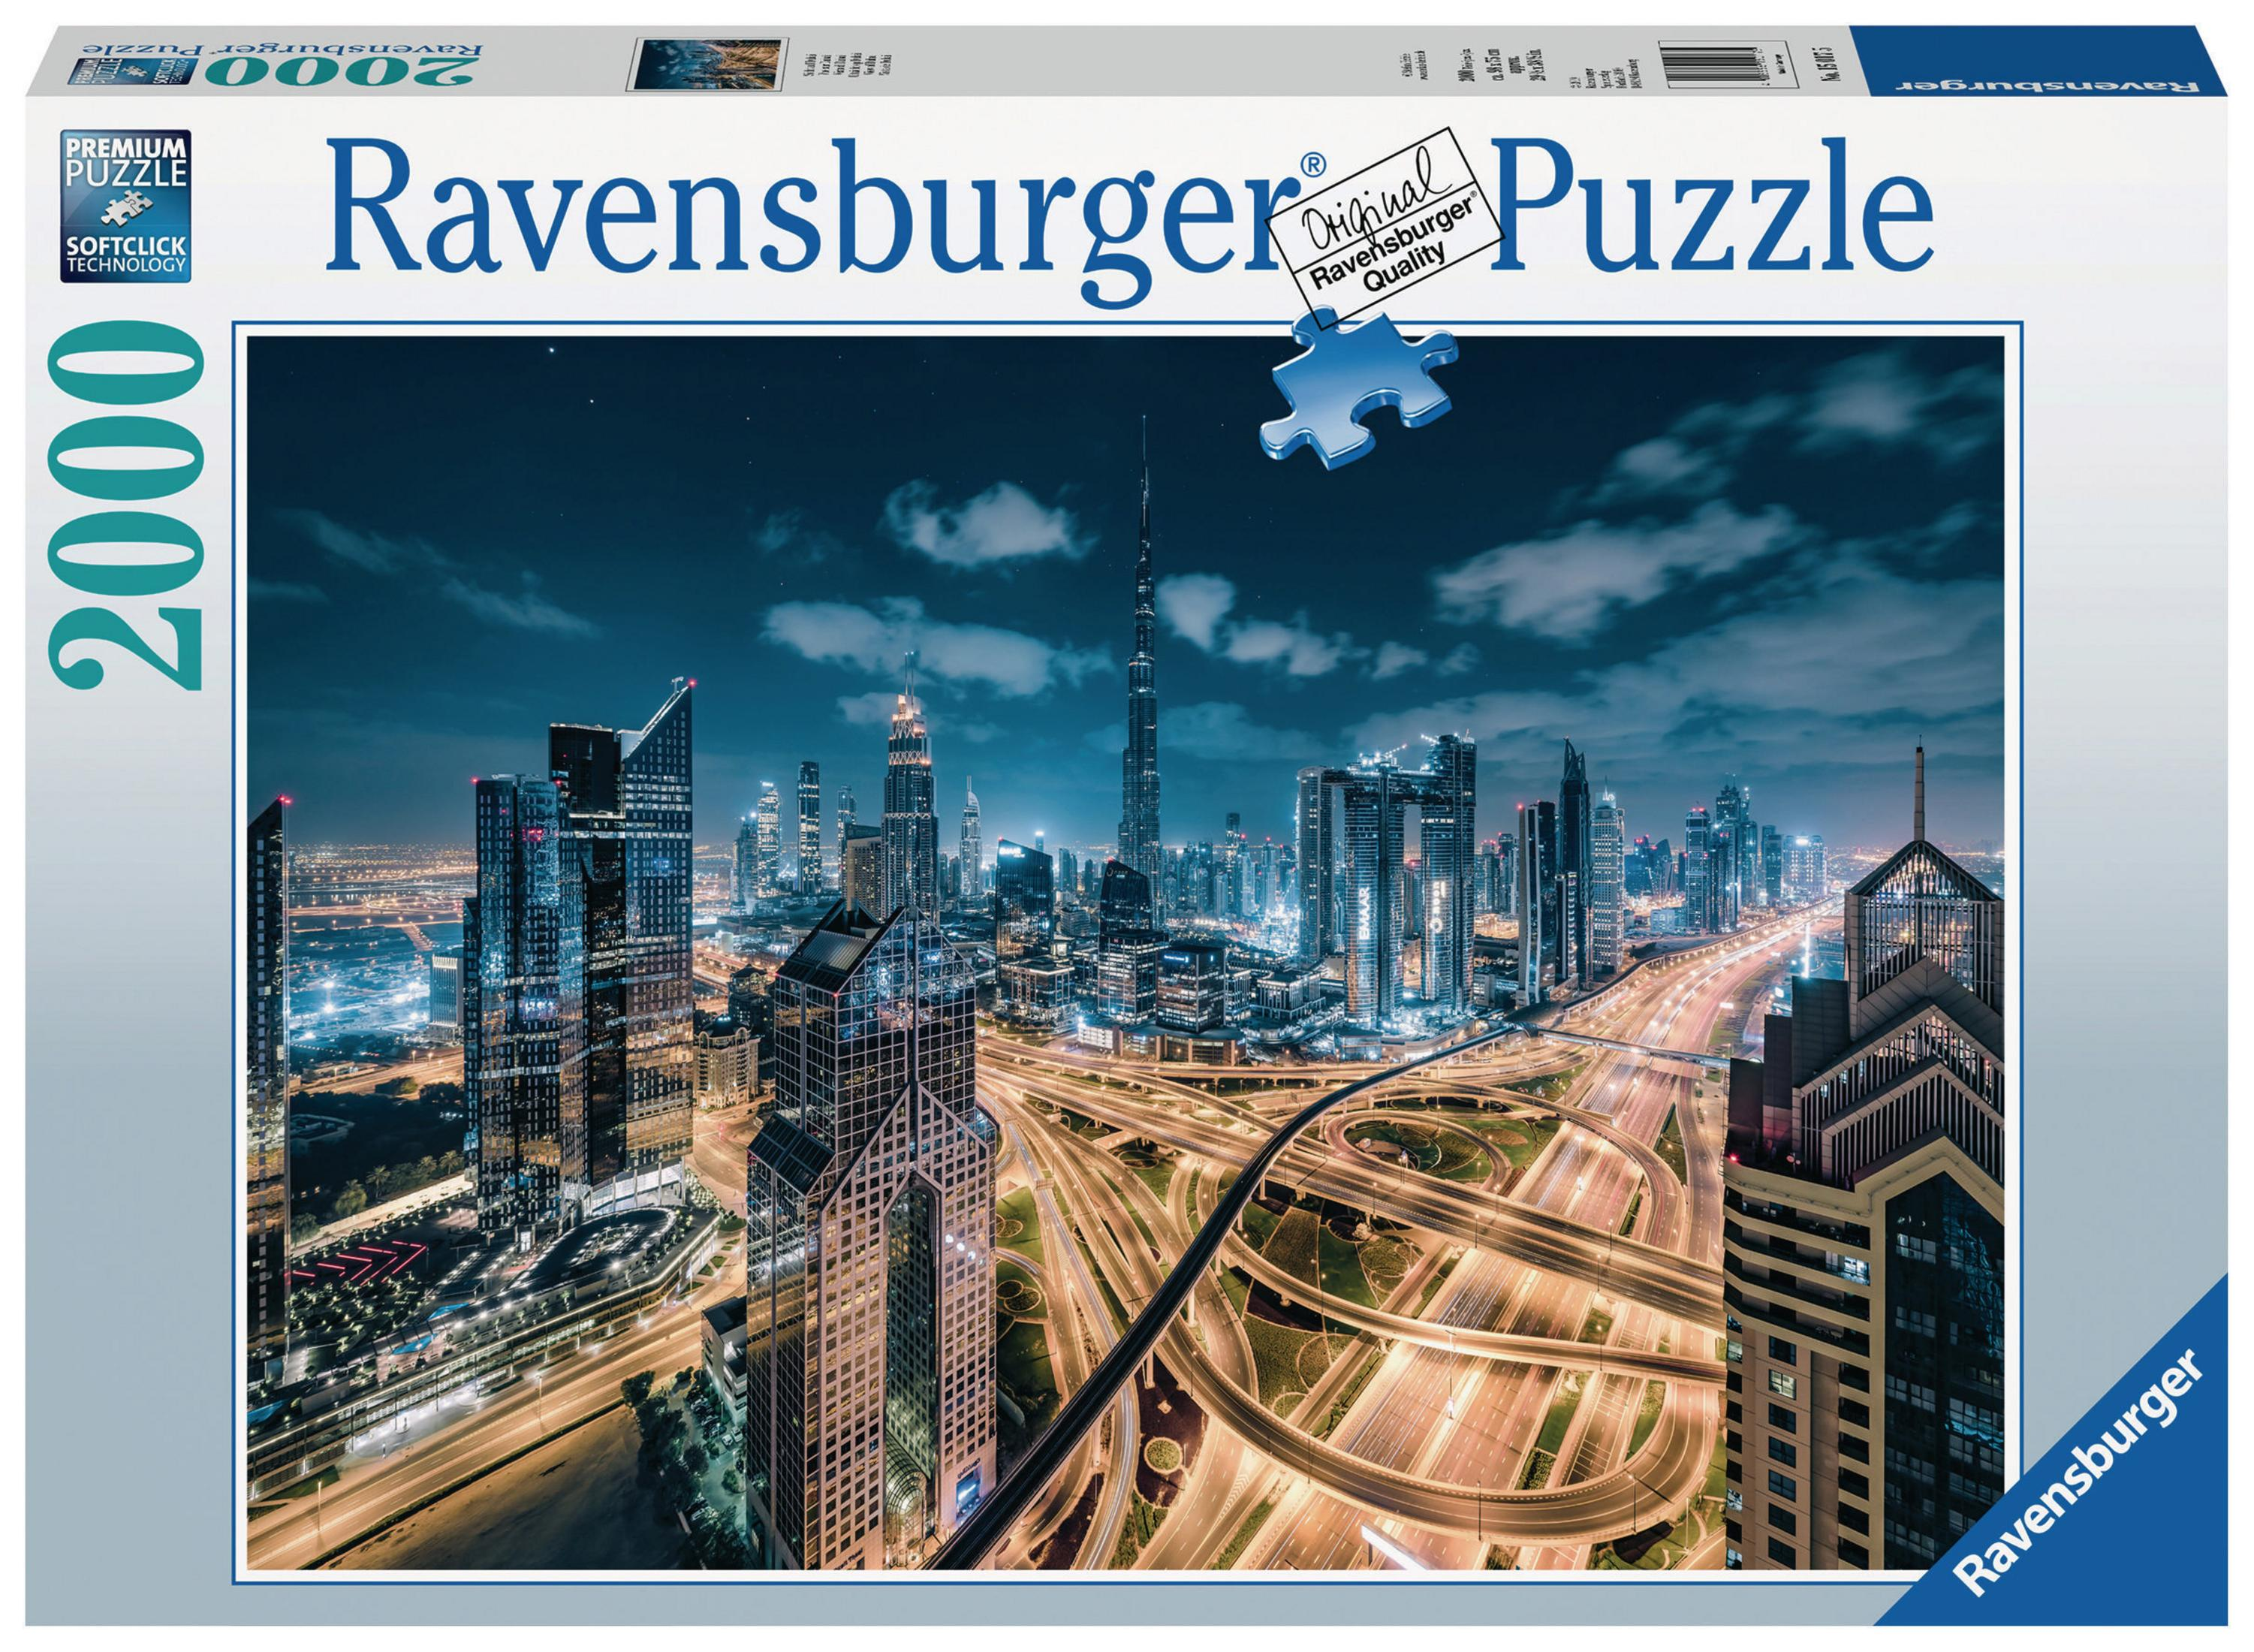 Puzzle AUF DUBAI RAVENSBURGER 15017 SICHT